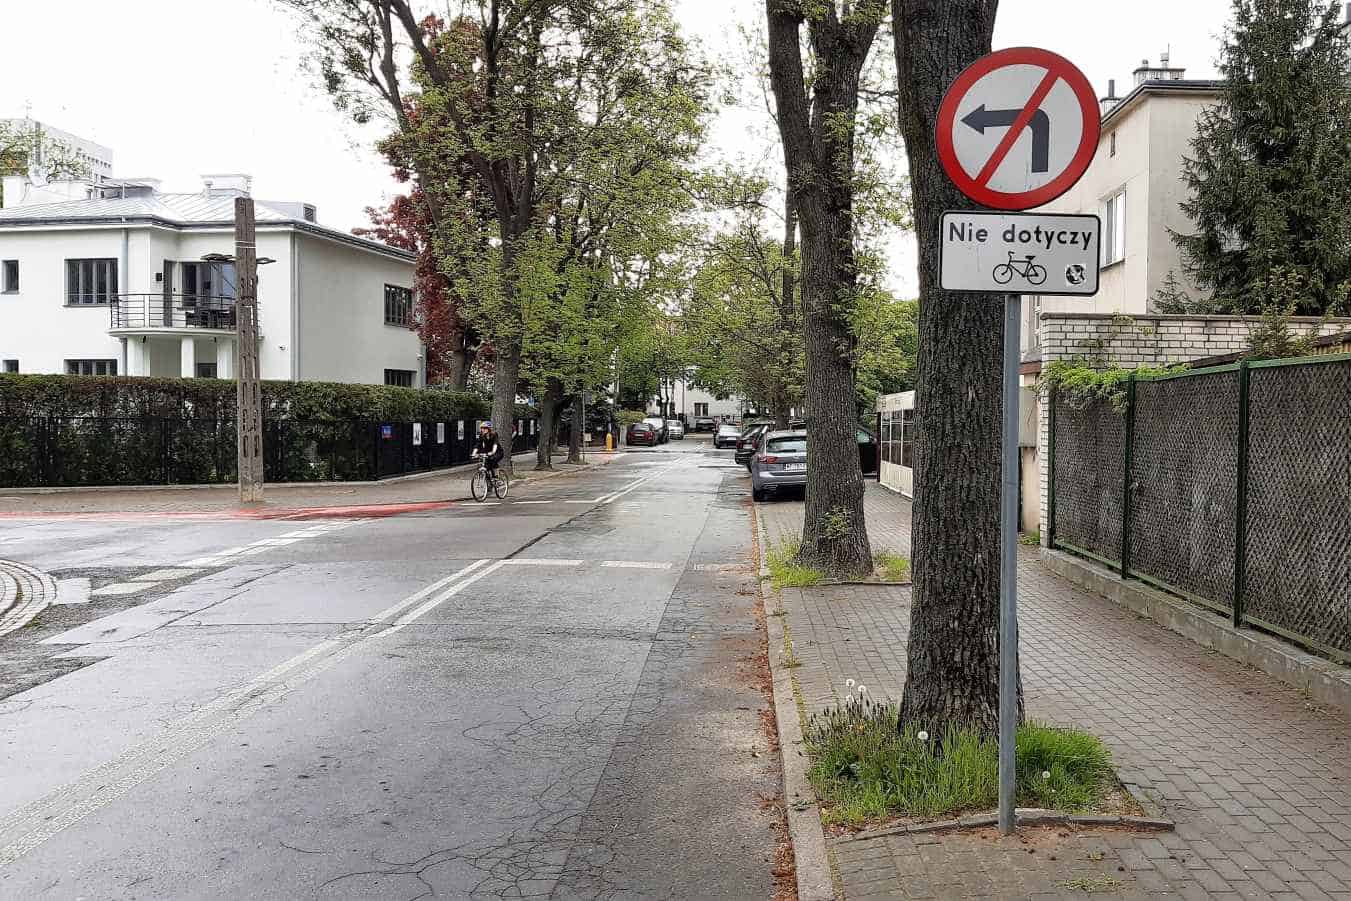 Tabliczka "Nie dotyczy rowerów" pozwala tu rowerzystom na skręcanie w lewo